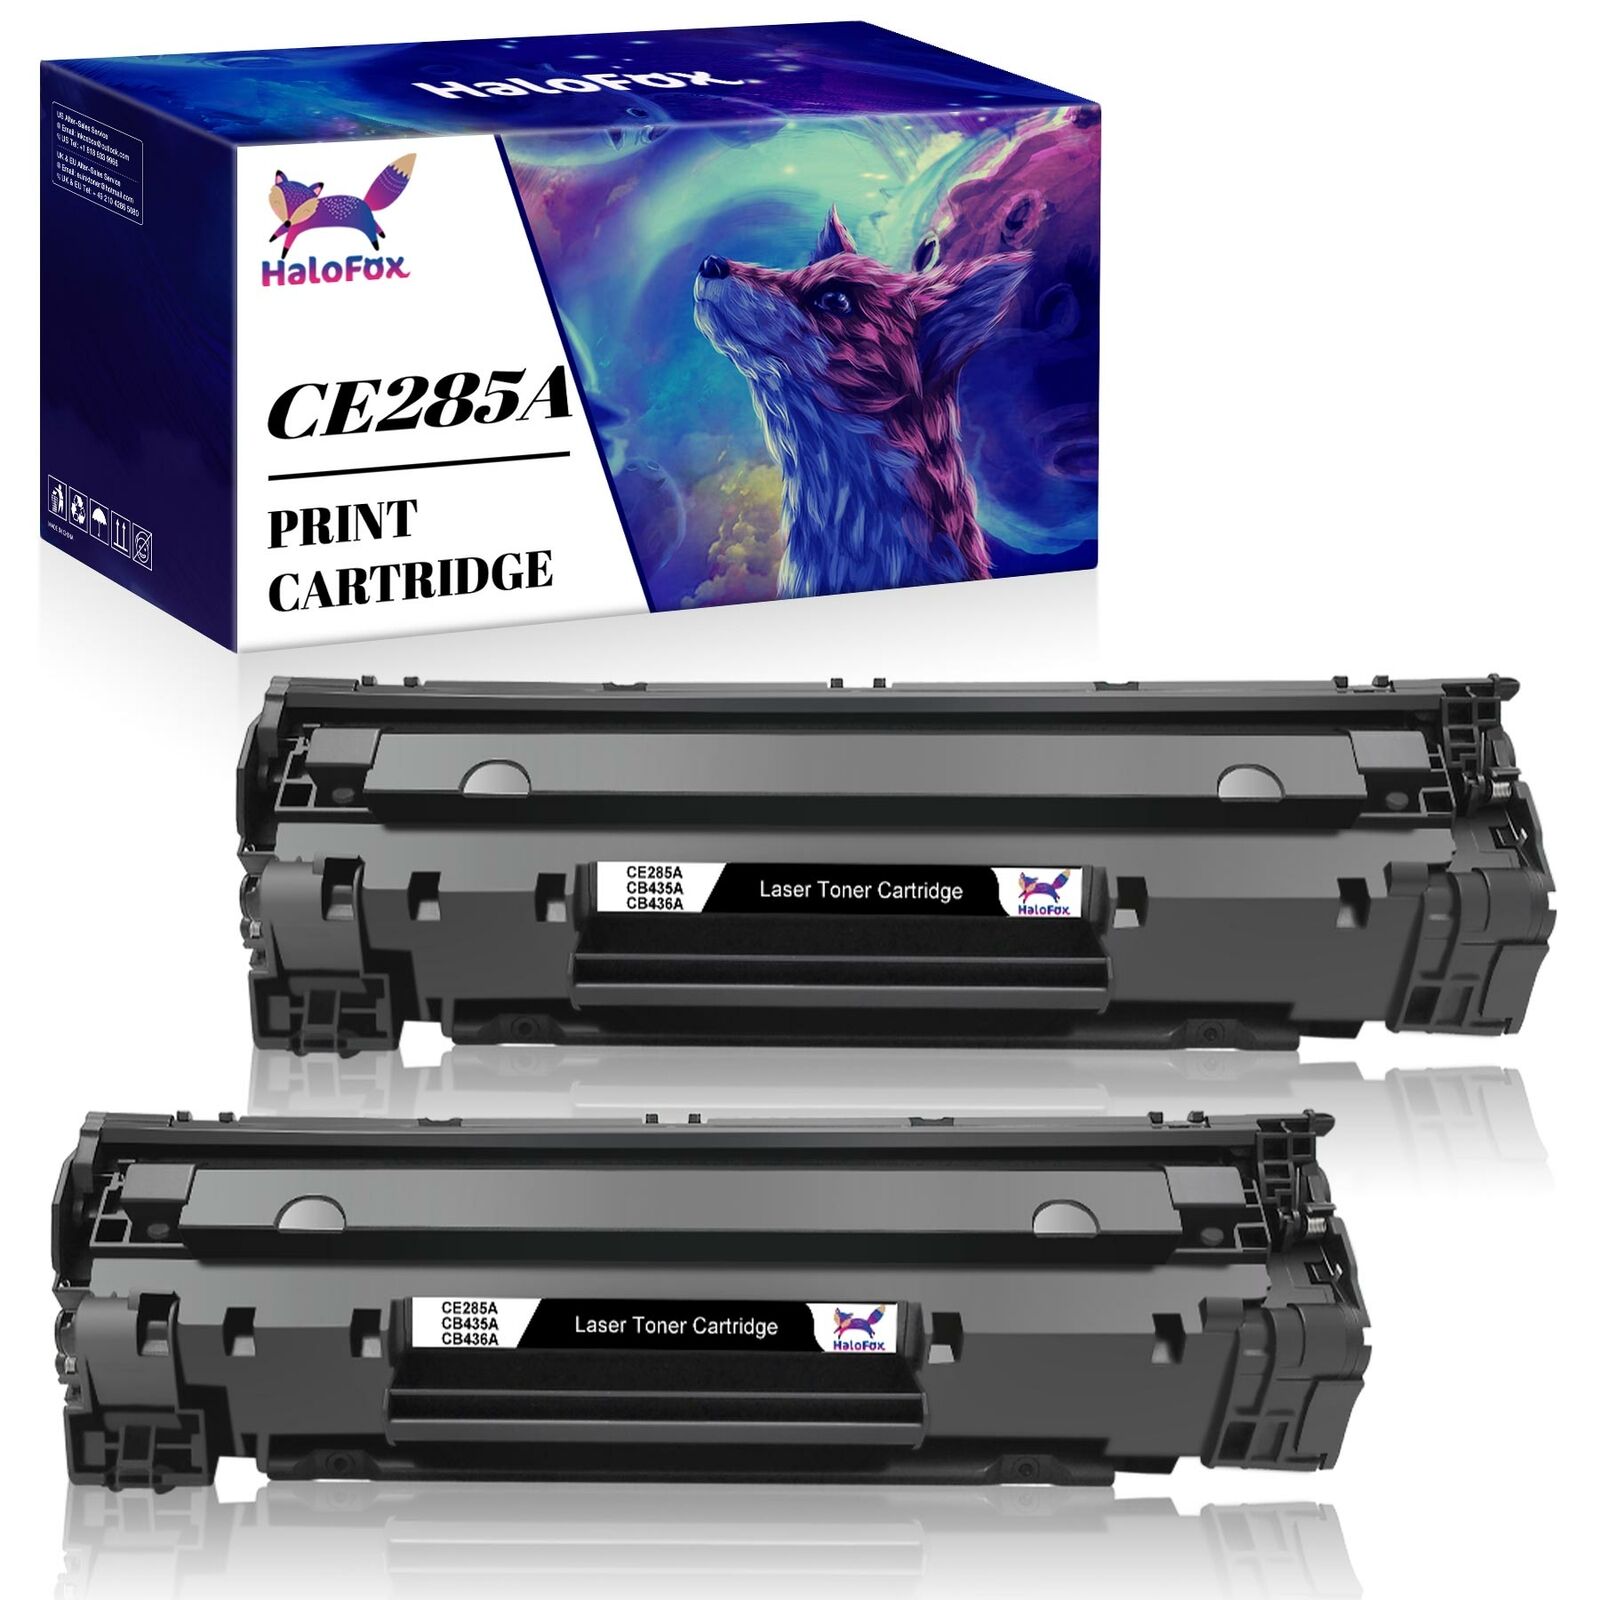 2x Black Toner Compatible with HP 85A CE285A LaserJet P1102 P1102w M1212nf M1217